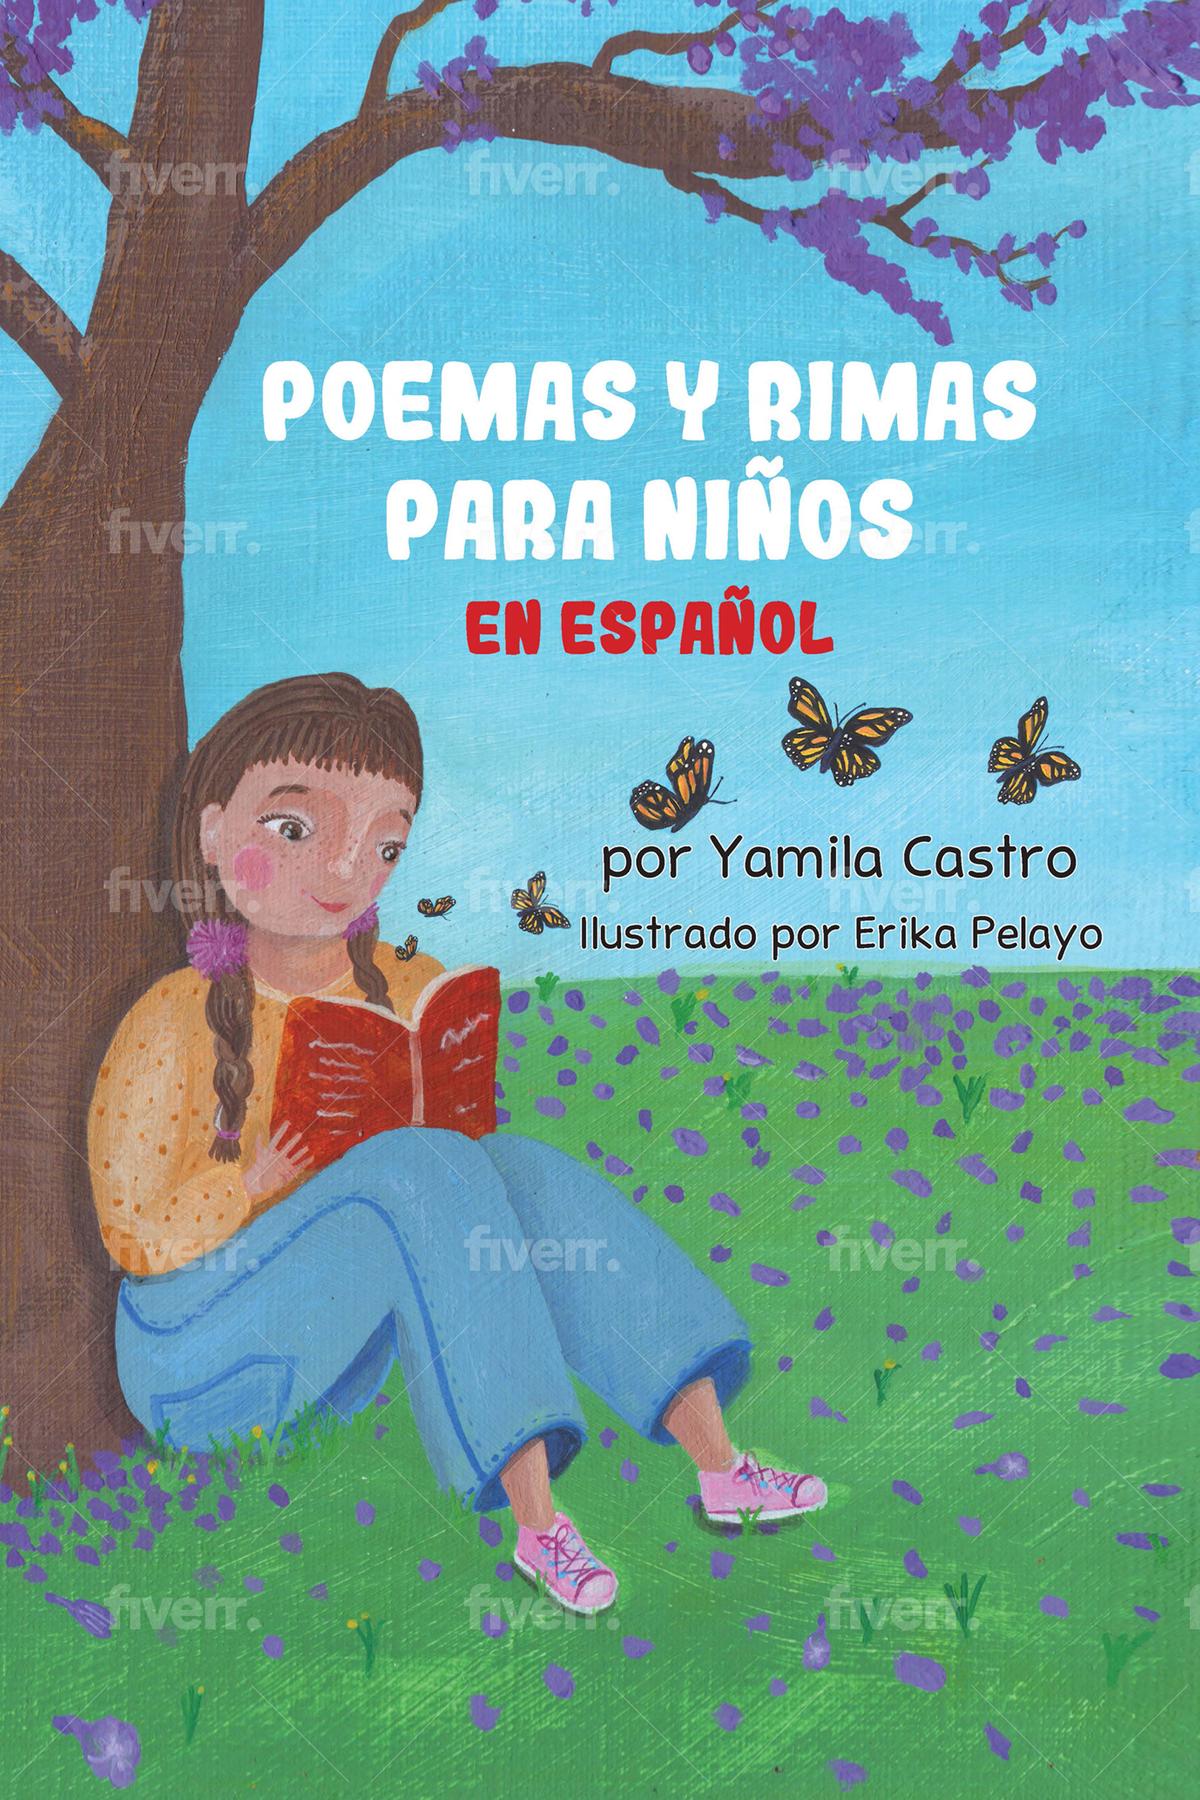 Normal Sustancialmente camioneta Poemas y rimas para niños en español by: Yamila Castro - 9781737432210 |  RedShelf